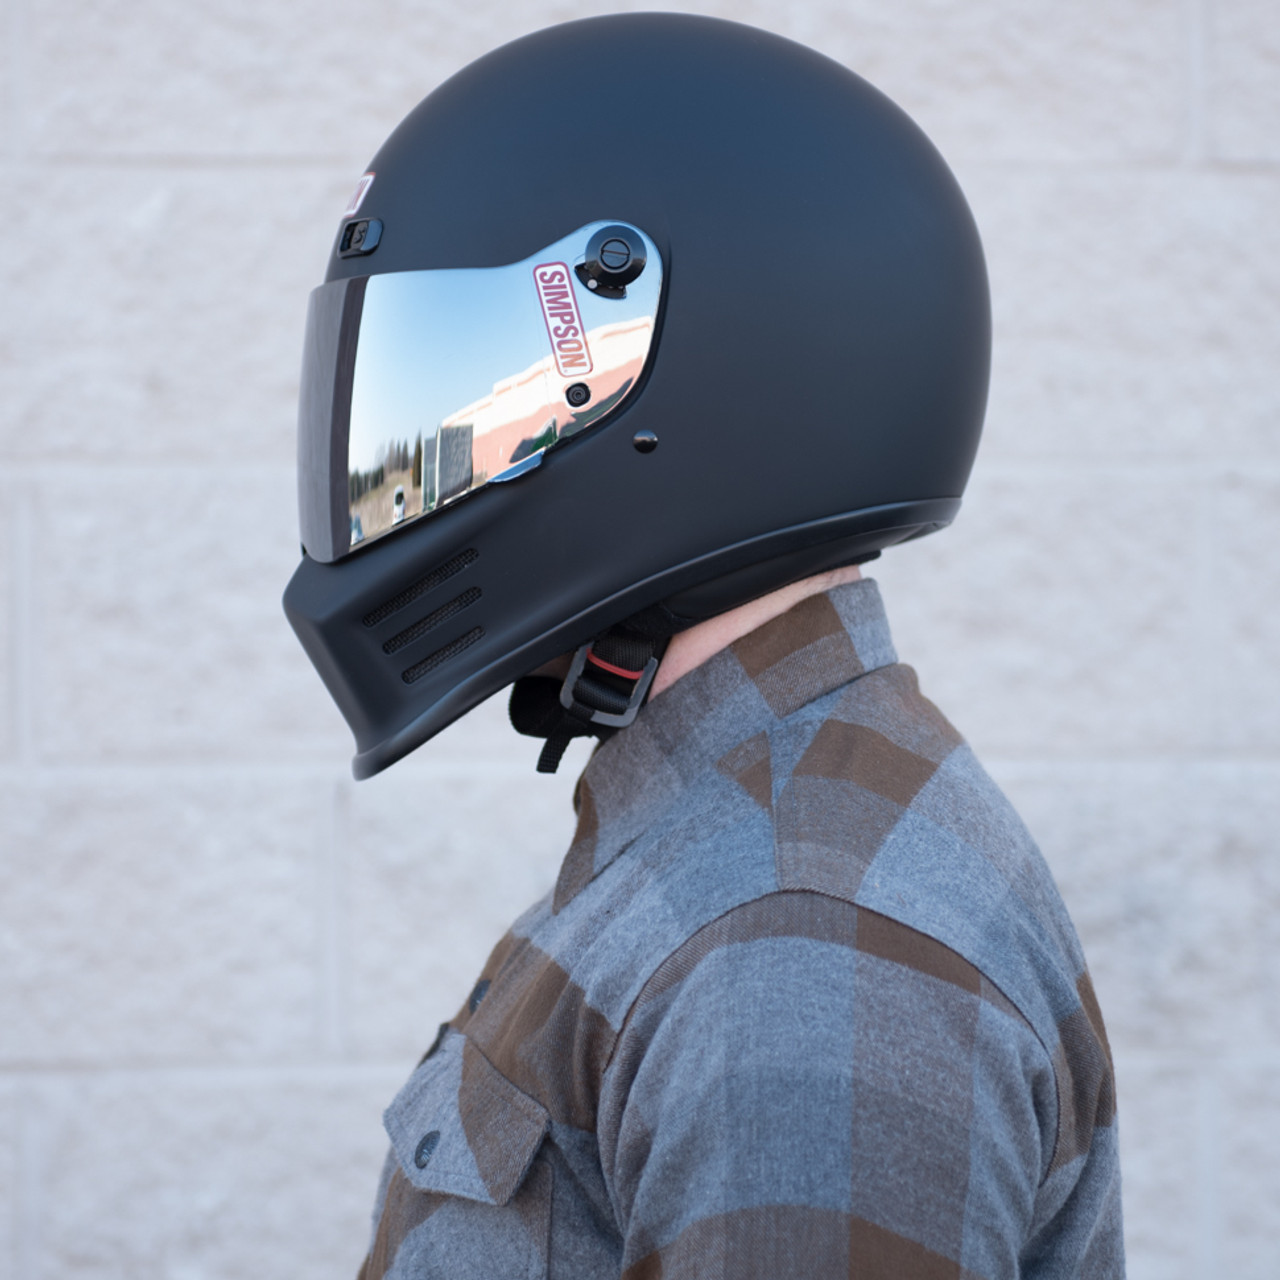 Simpson Street Bandit Motorcycle Helmet - Matte Black - Get Lowered Cycles